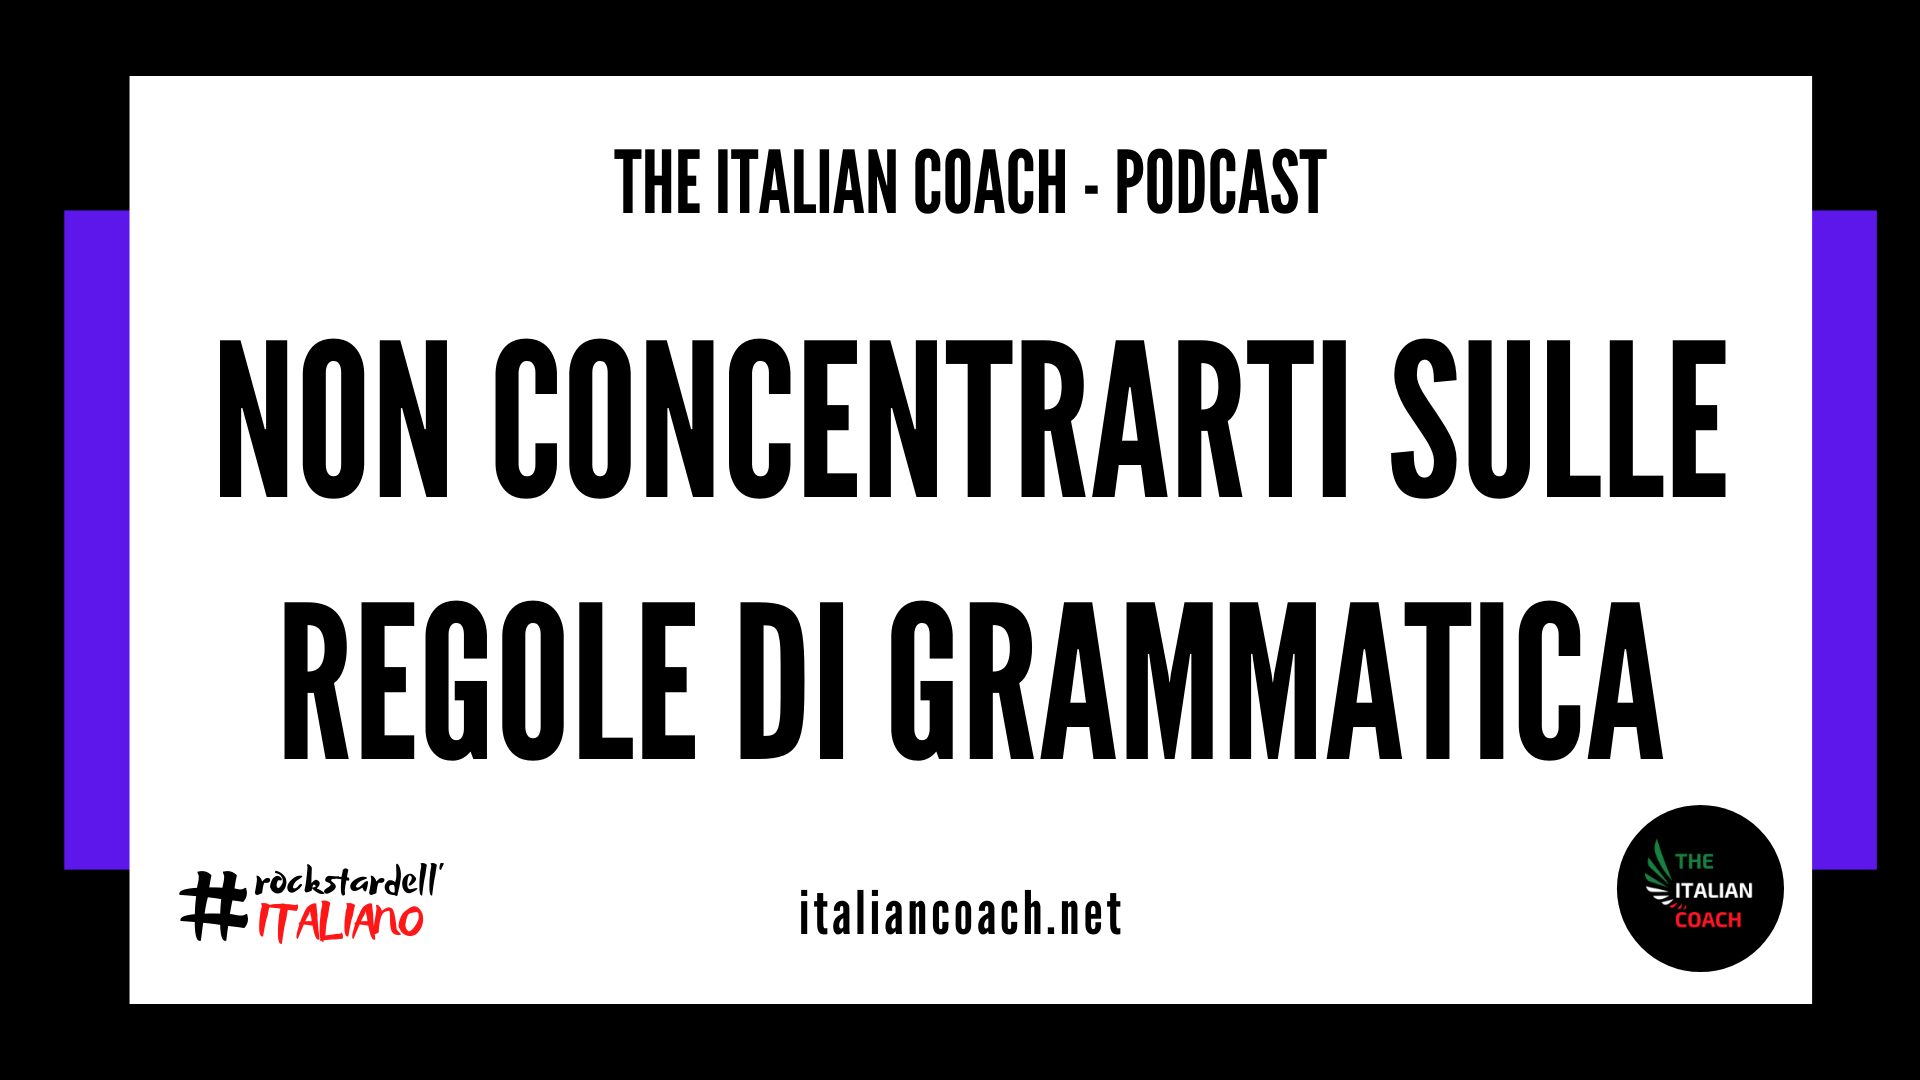 the italian coach non concentrarti sulle regole di grammatica